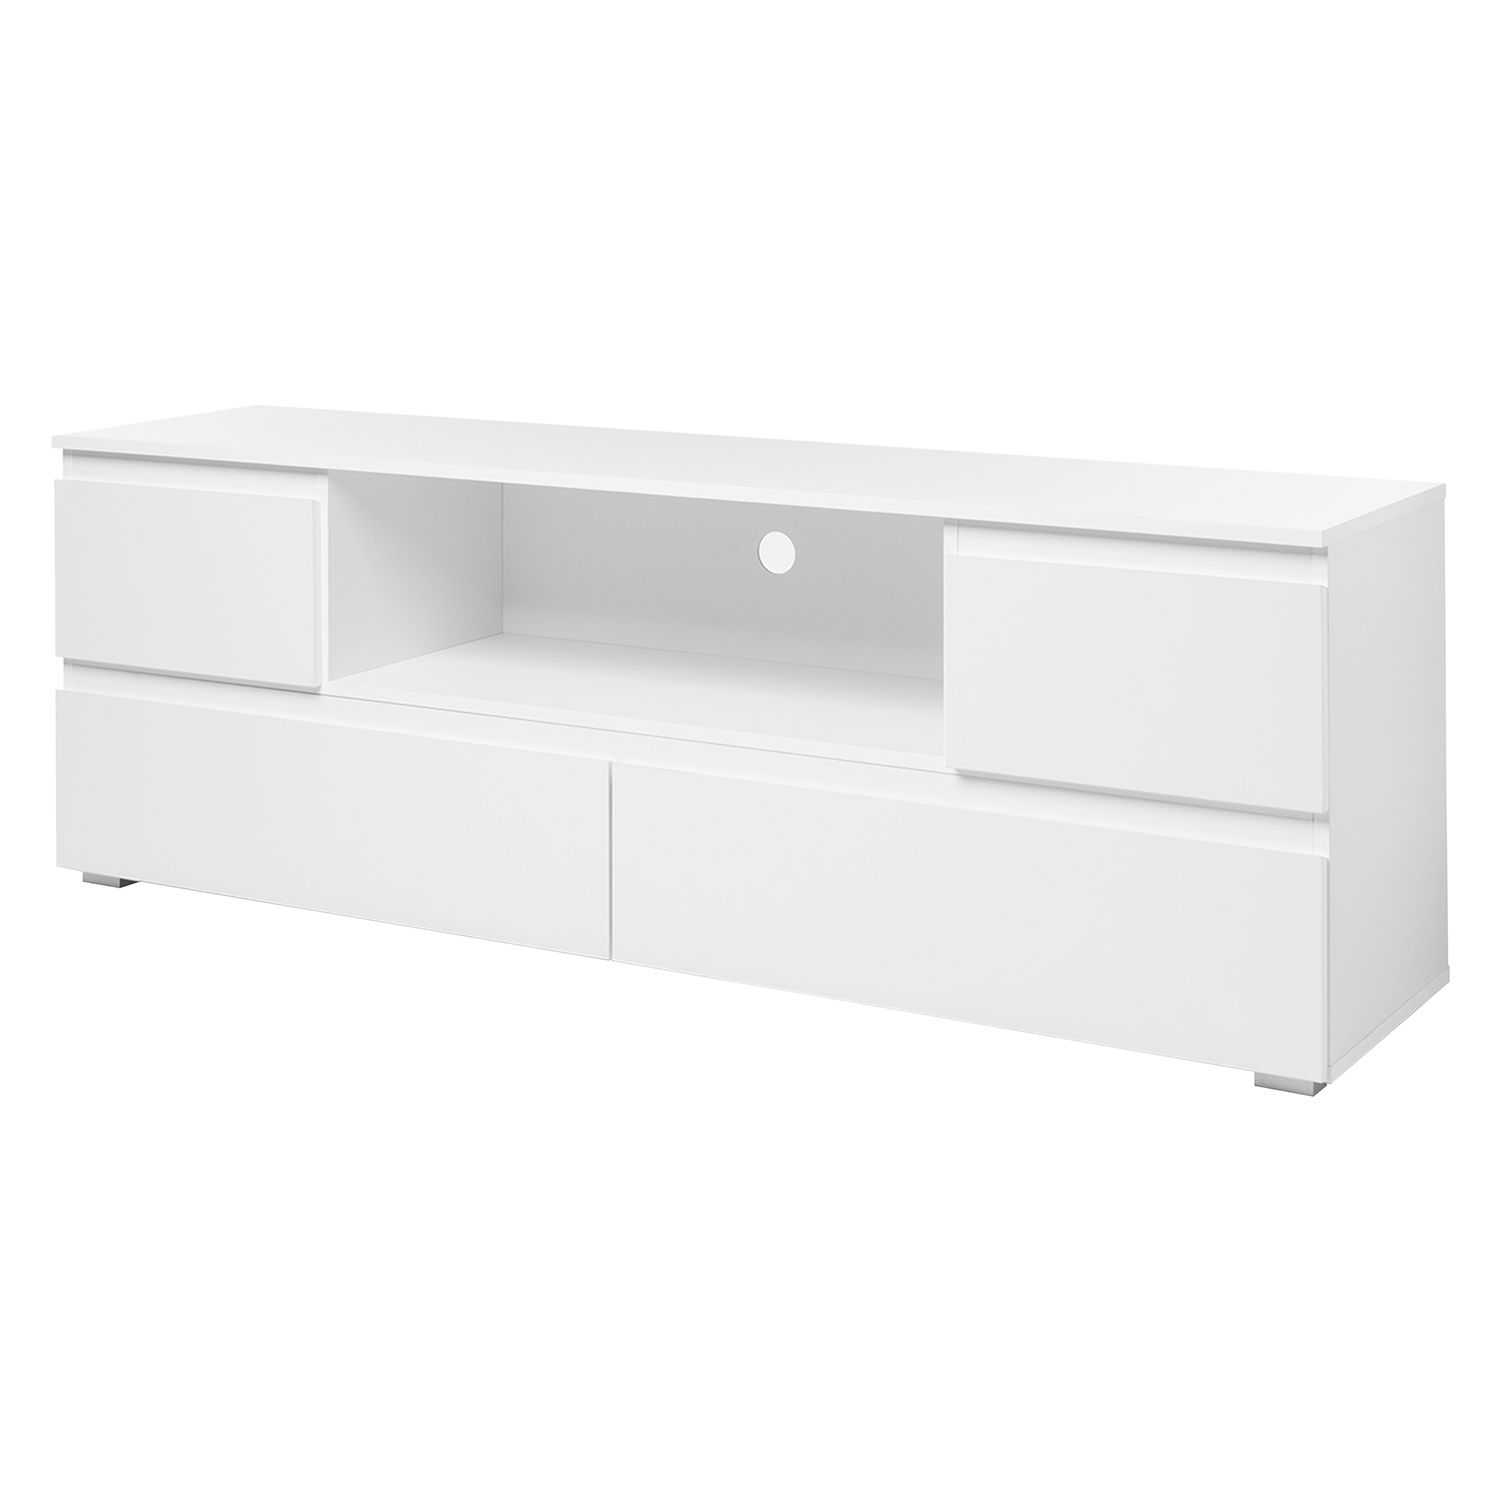 TV stolek IMAGE 18 bílý - IDEA nábytek